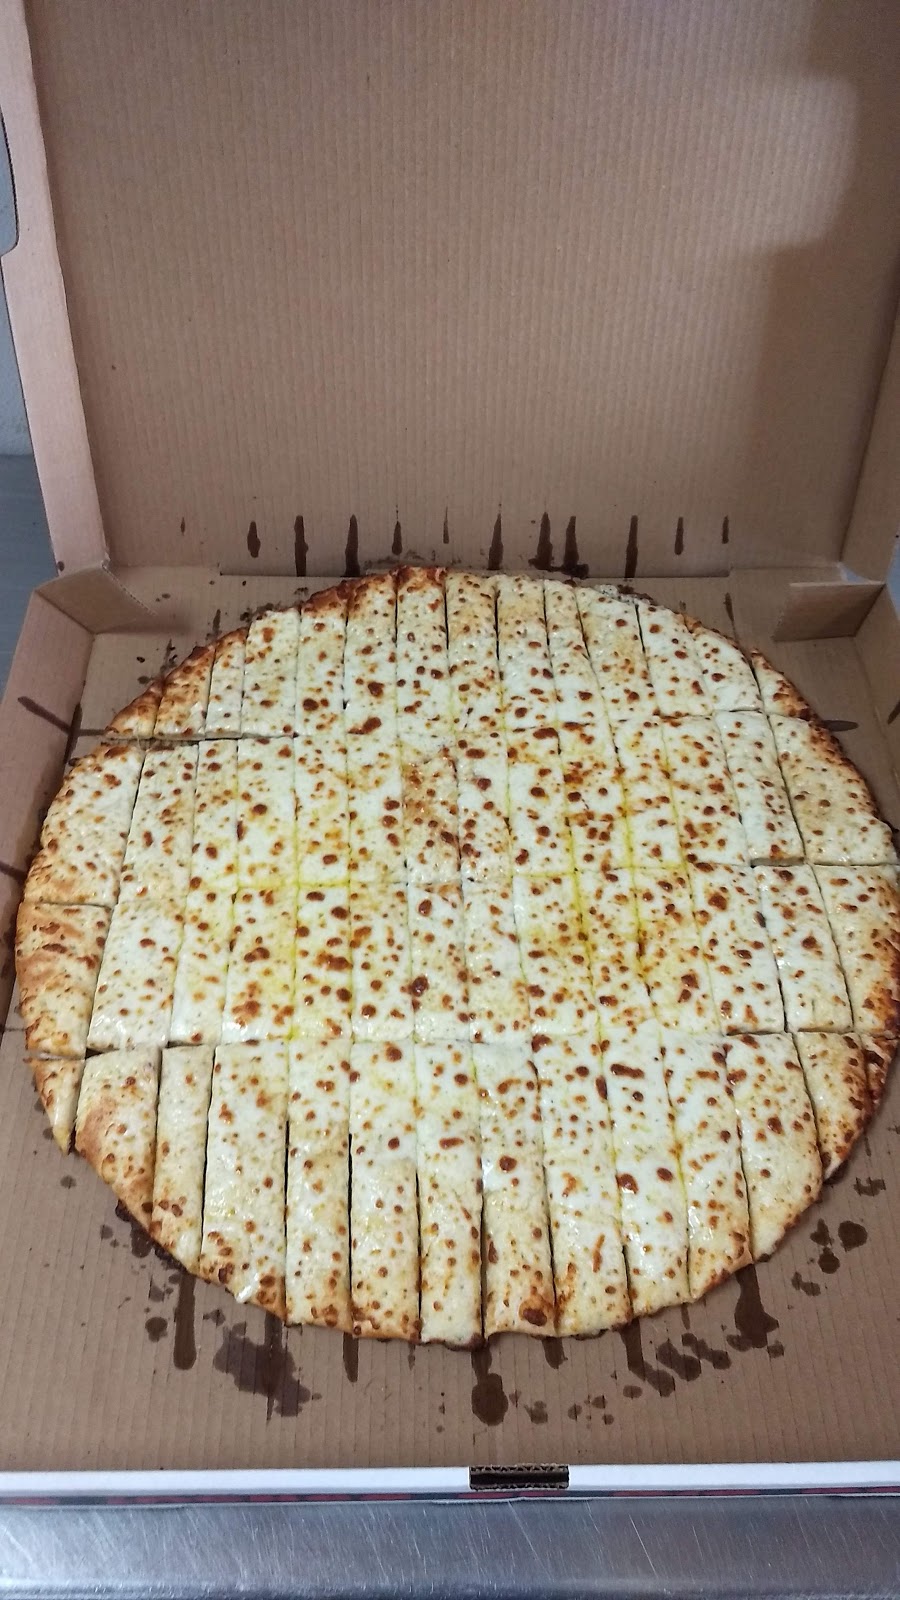 Chanellos Pizza | 6213 Chesapeake Blvd, Norfolk, VA 23513, USA | Phone: (757) 858-4000